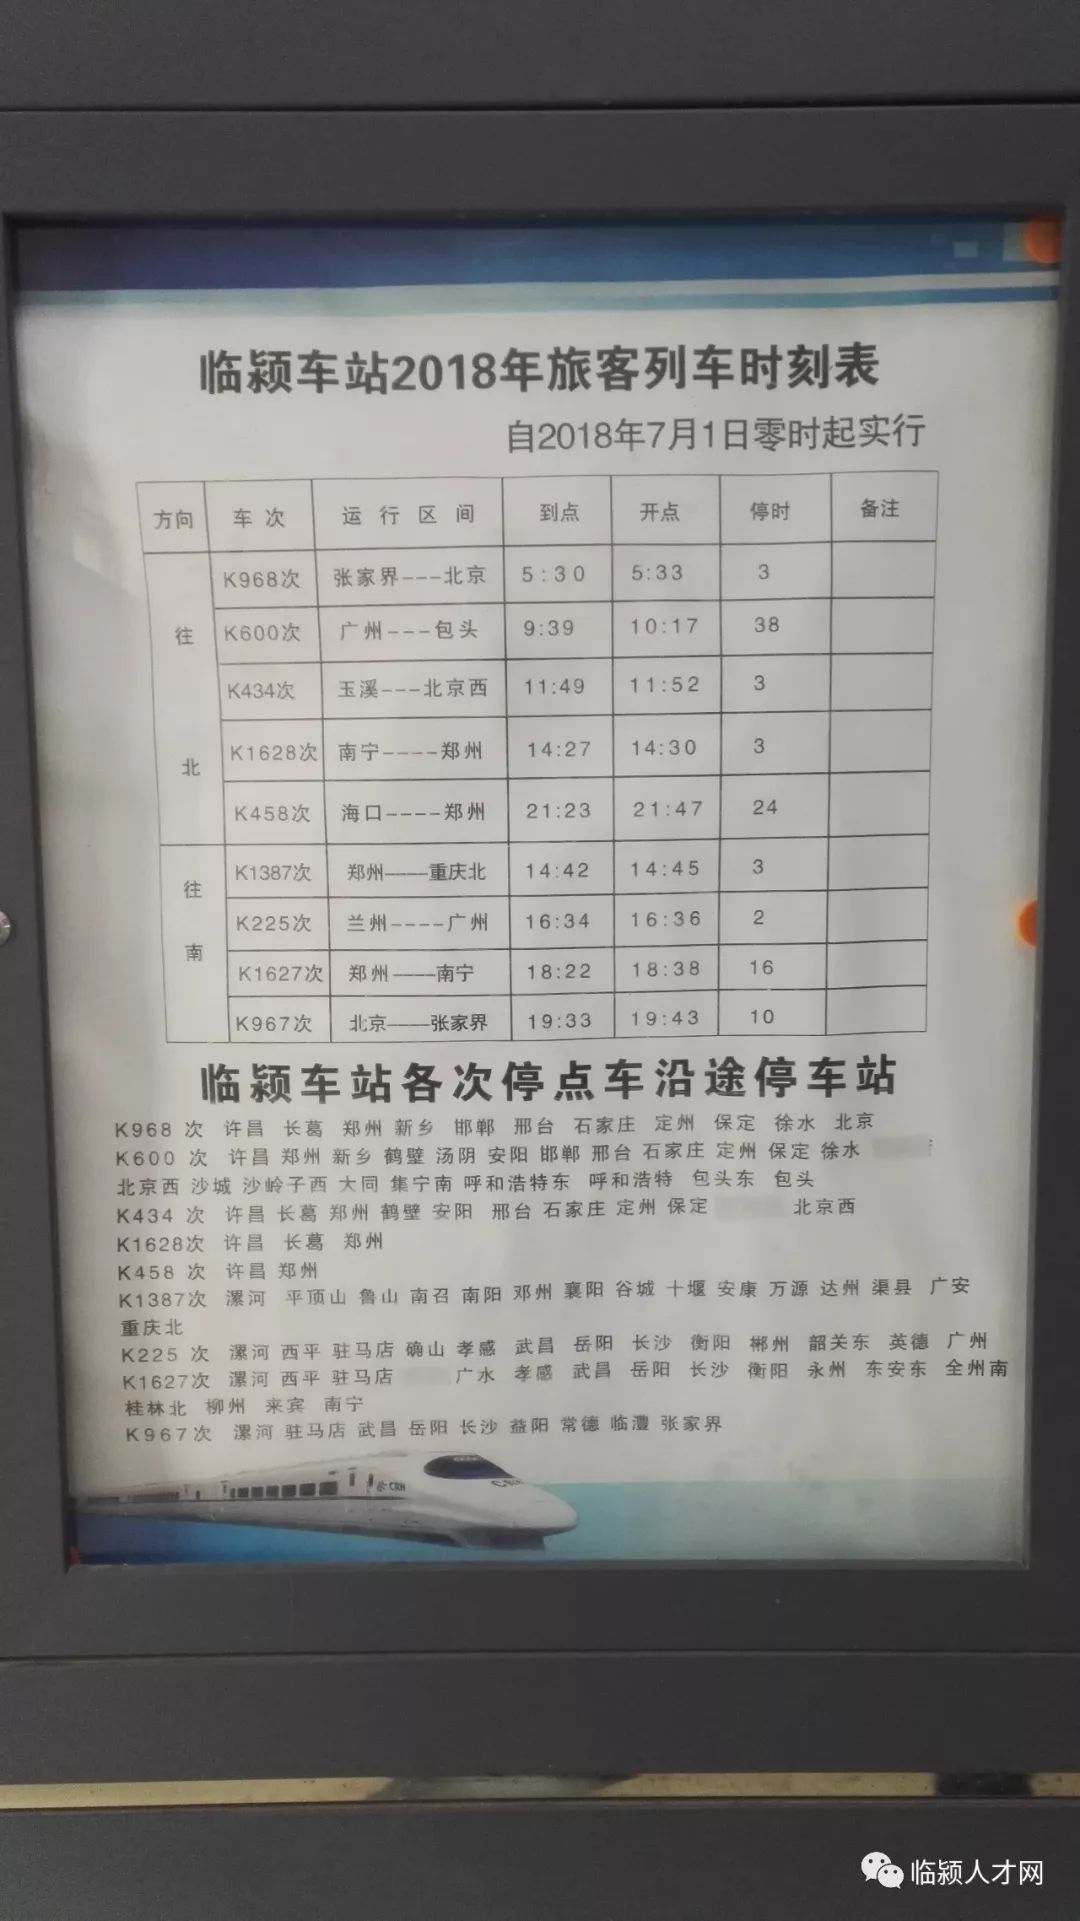 2019年临颍火车站列车时刻表和代售点地址